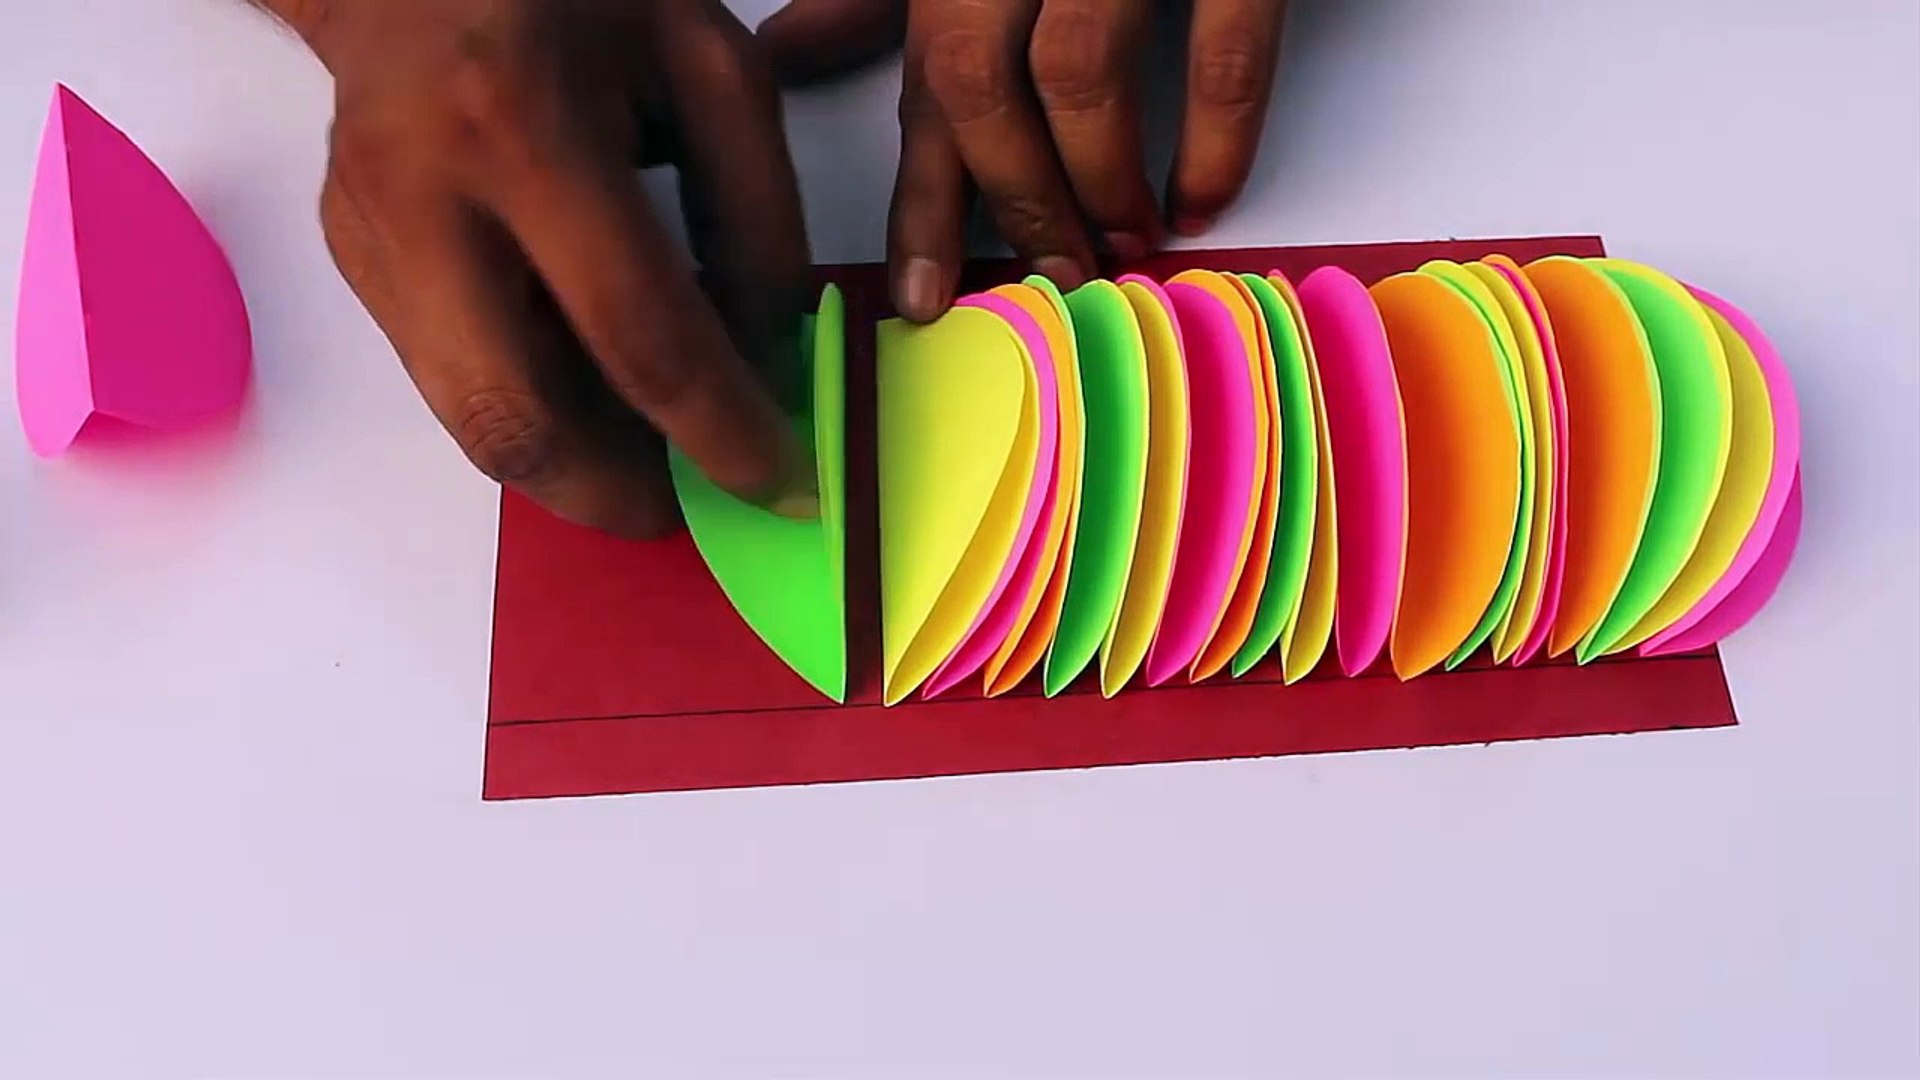 فكرة جميلة ومبتكرة بالورق الملون لتزيين غرفة الطفل - فيديو Dailymotion